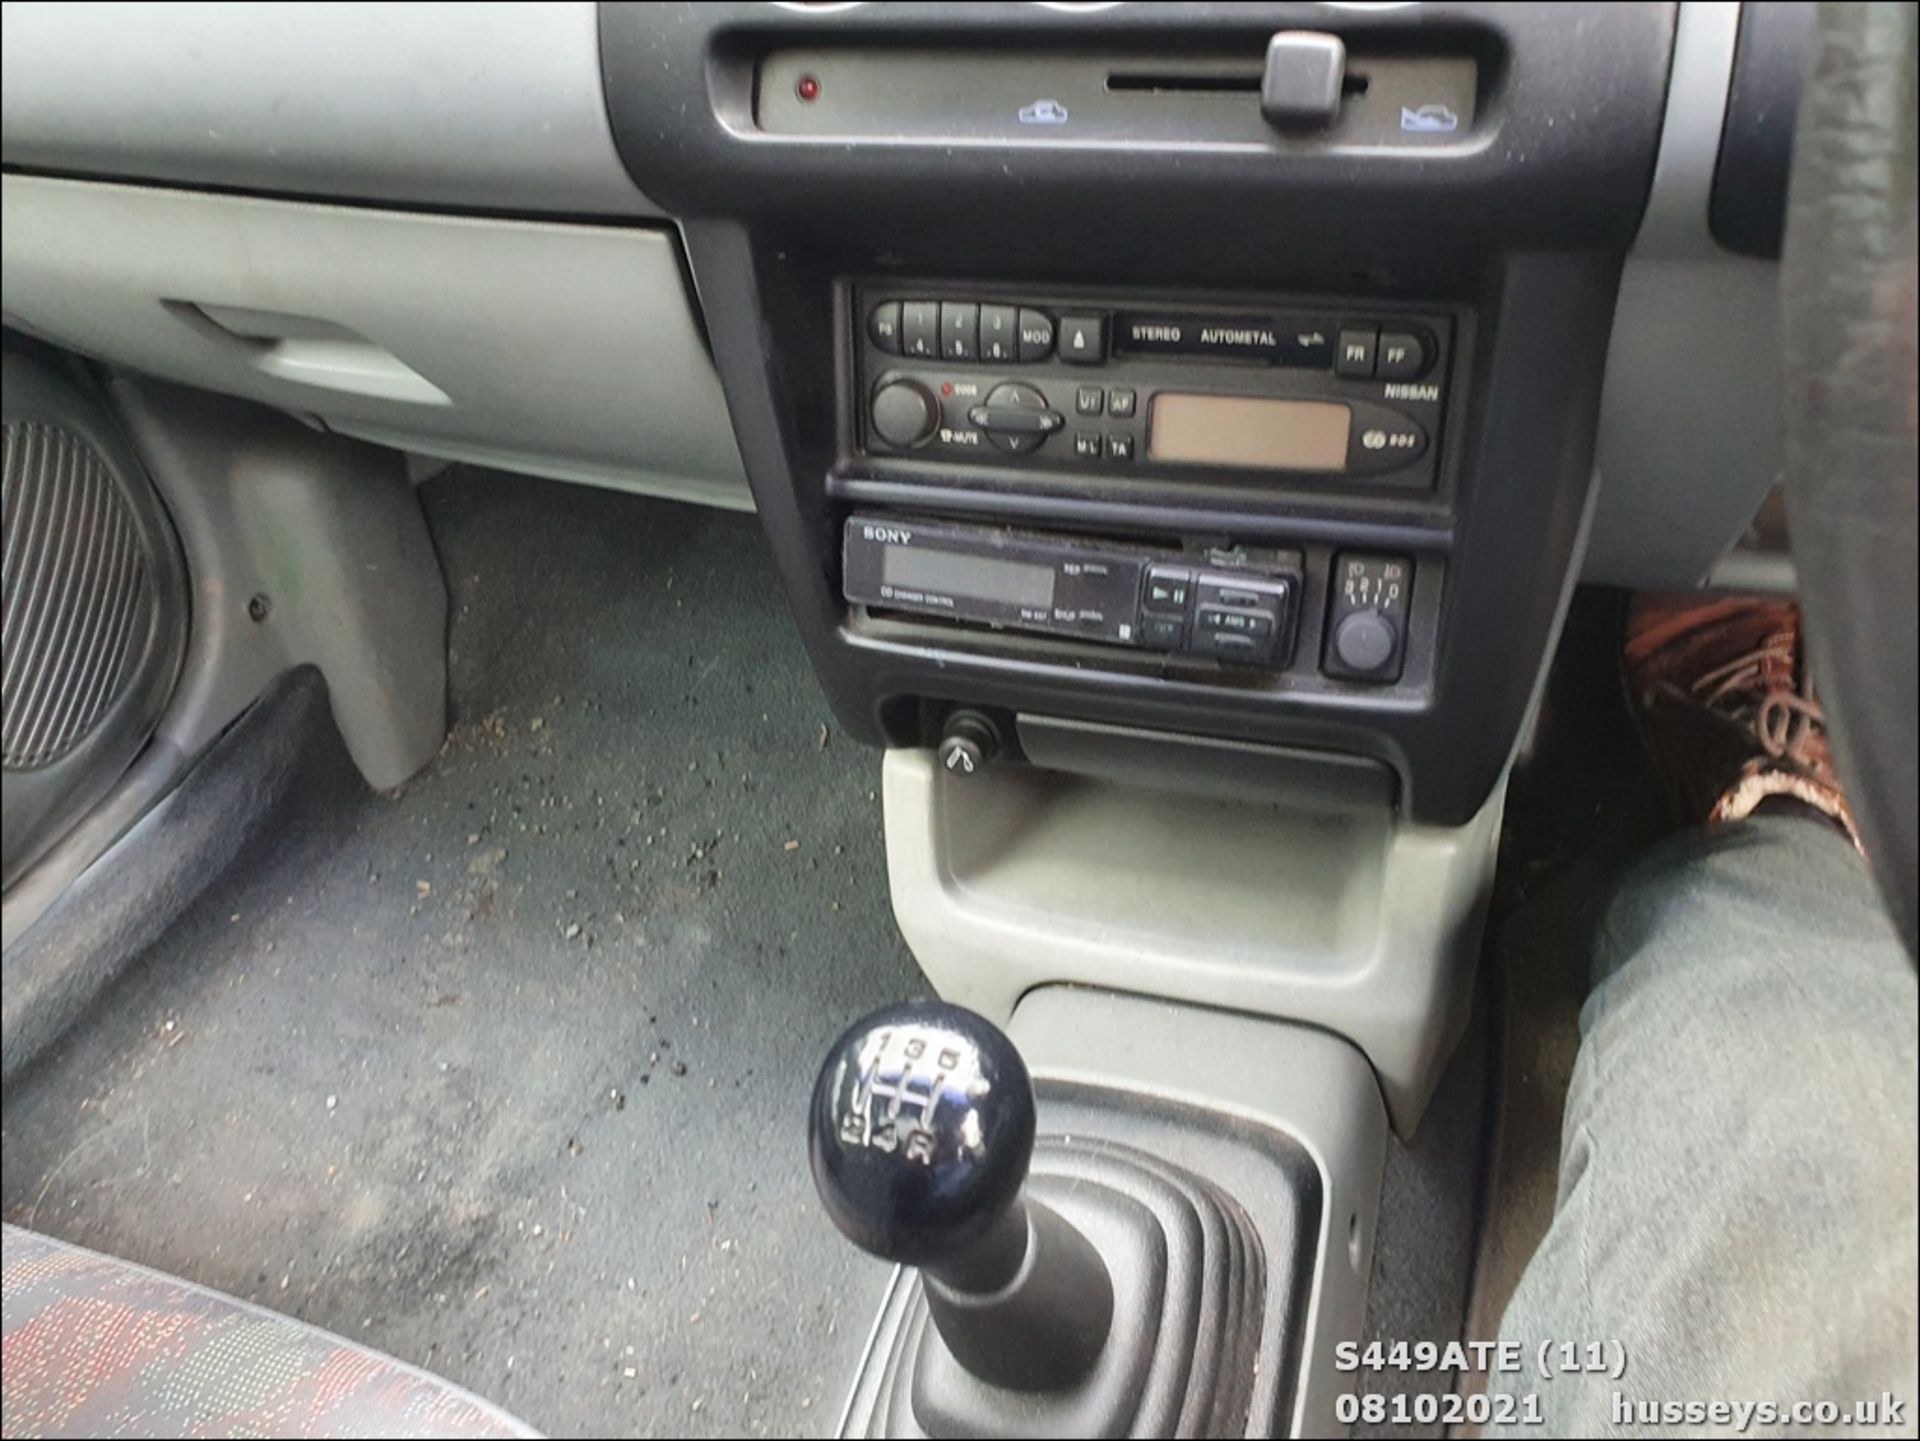 1998 NISSAN MICRA GX - 998cc 3dr Hatchback (Green, 61k) - Image 11 of 11